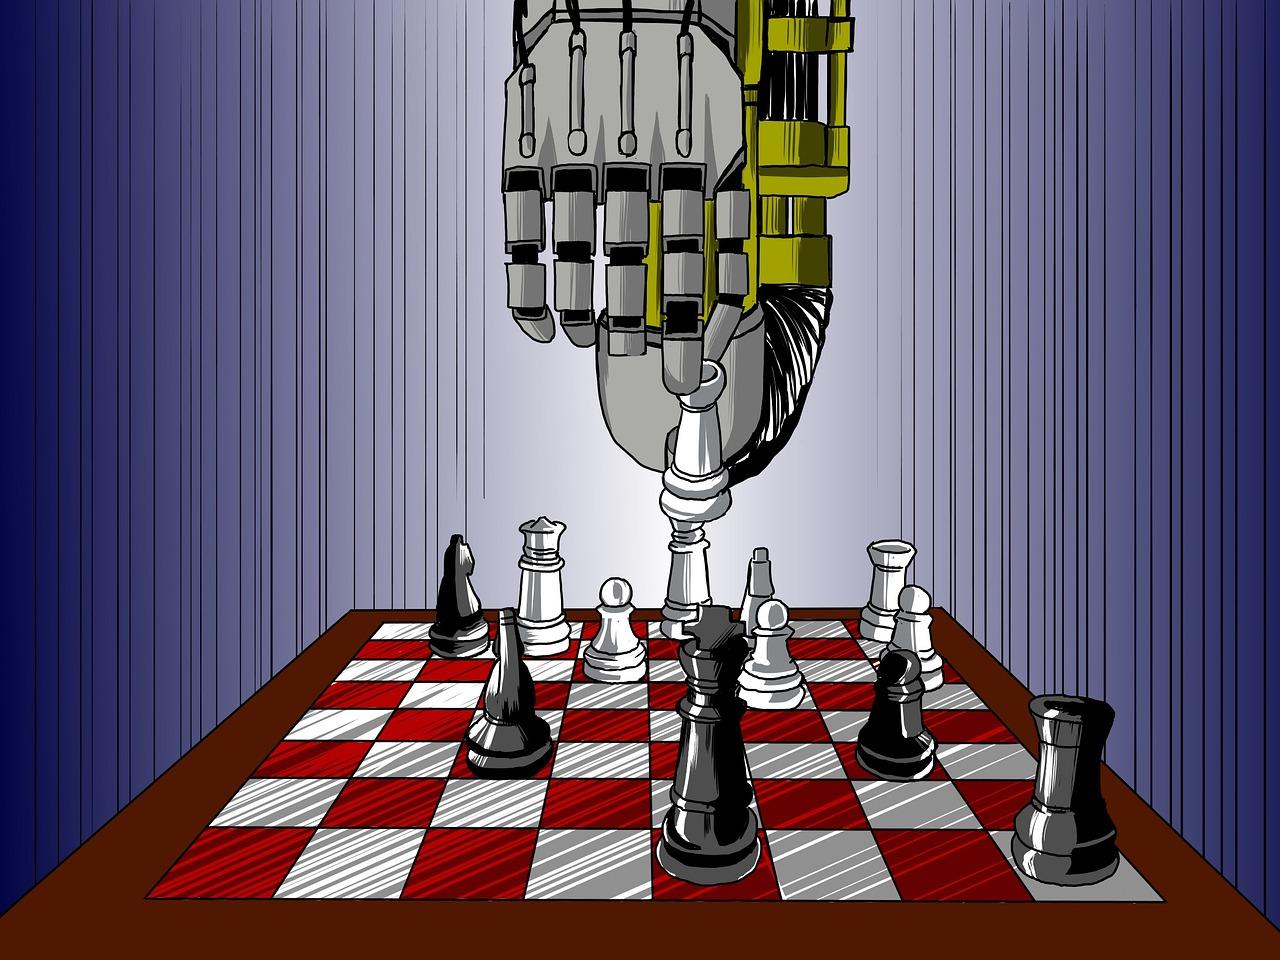 Opera e Chess.com criam navegador de xadrez personalizado